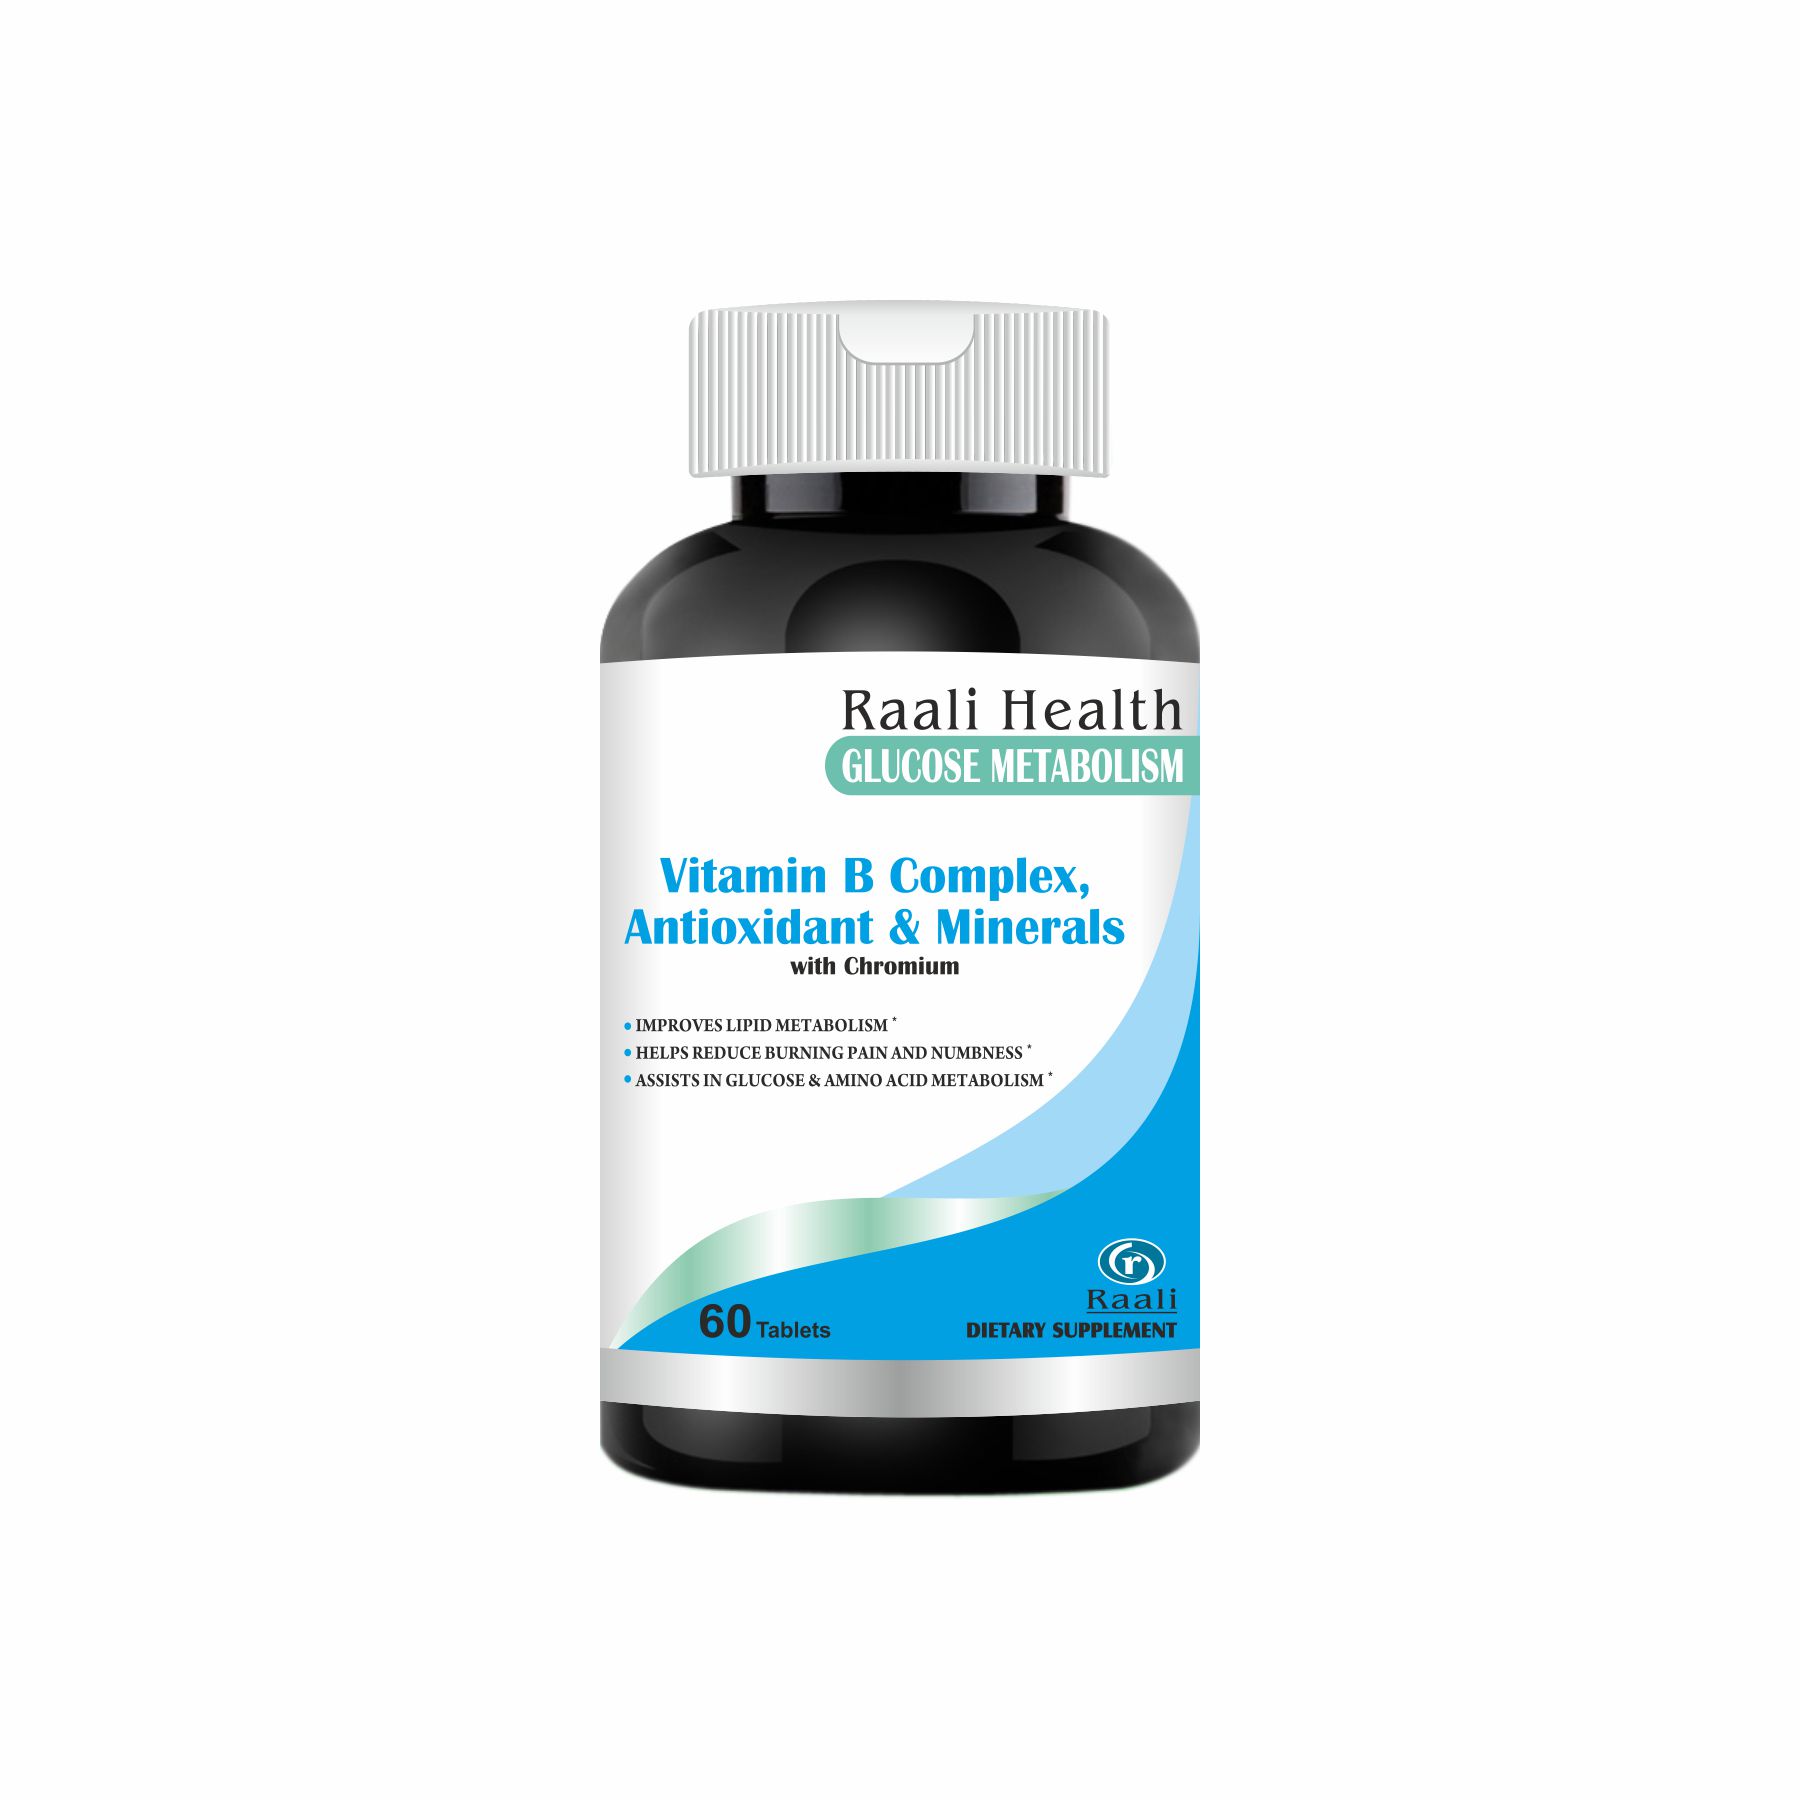 Vitamin B complex antioxidant and minerals, improve metabolism,